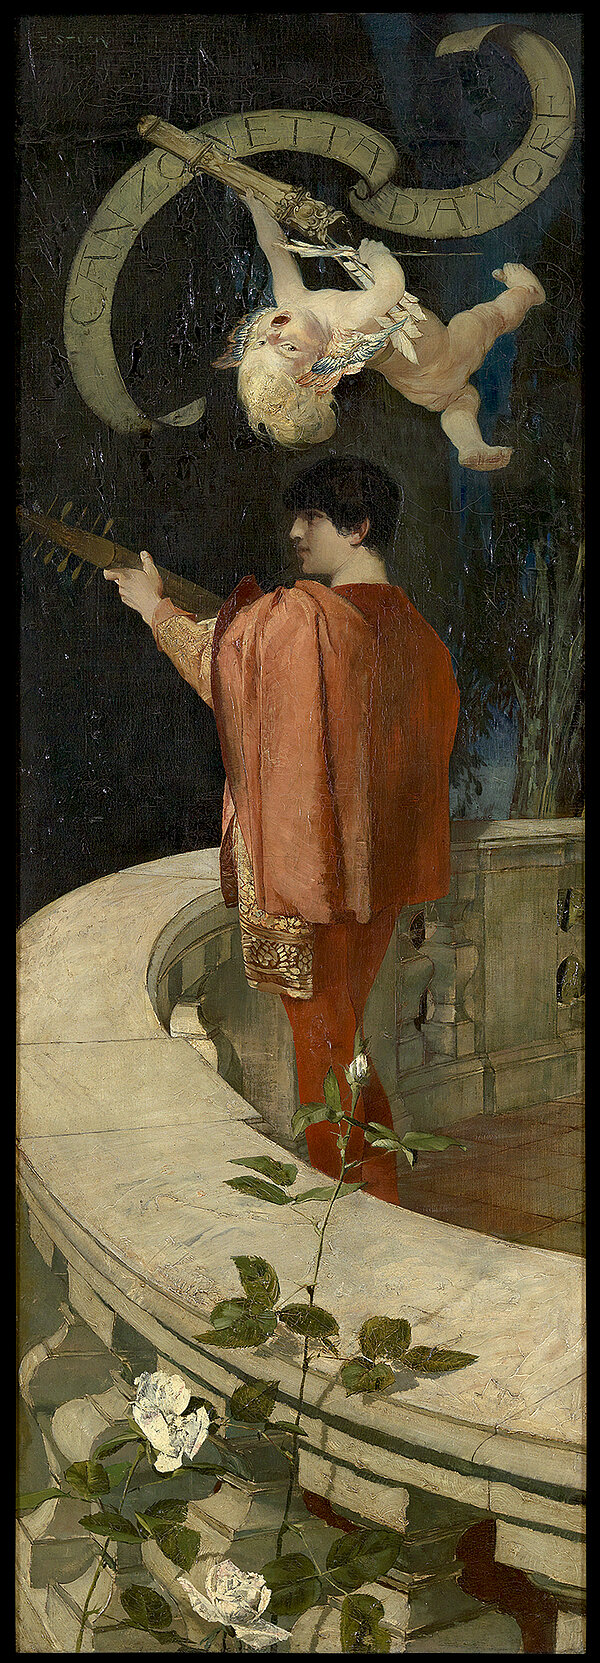 Franz von Stuck, Canzonetta d'amore, 1887–1888